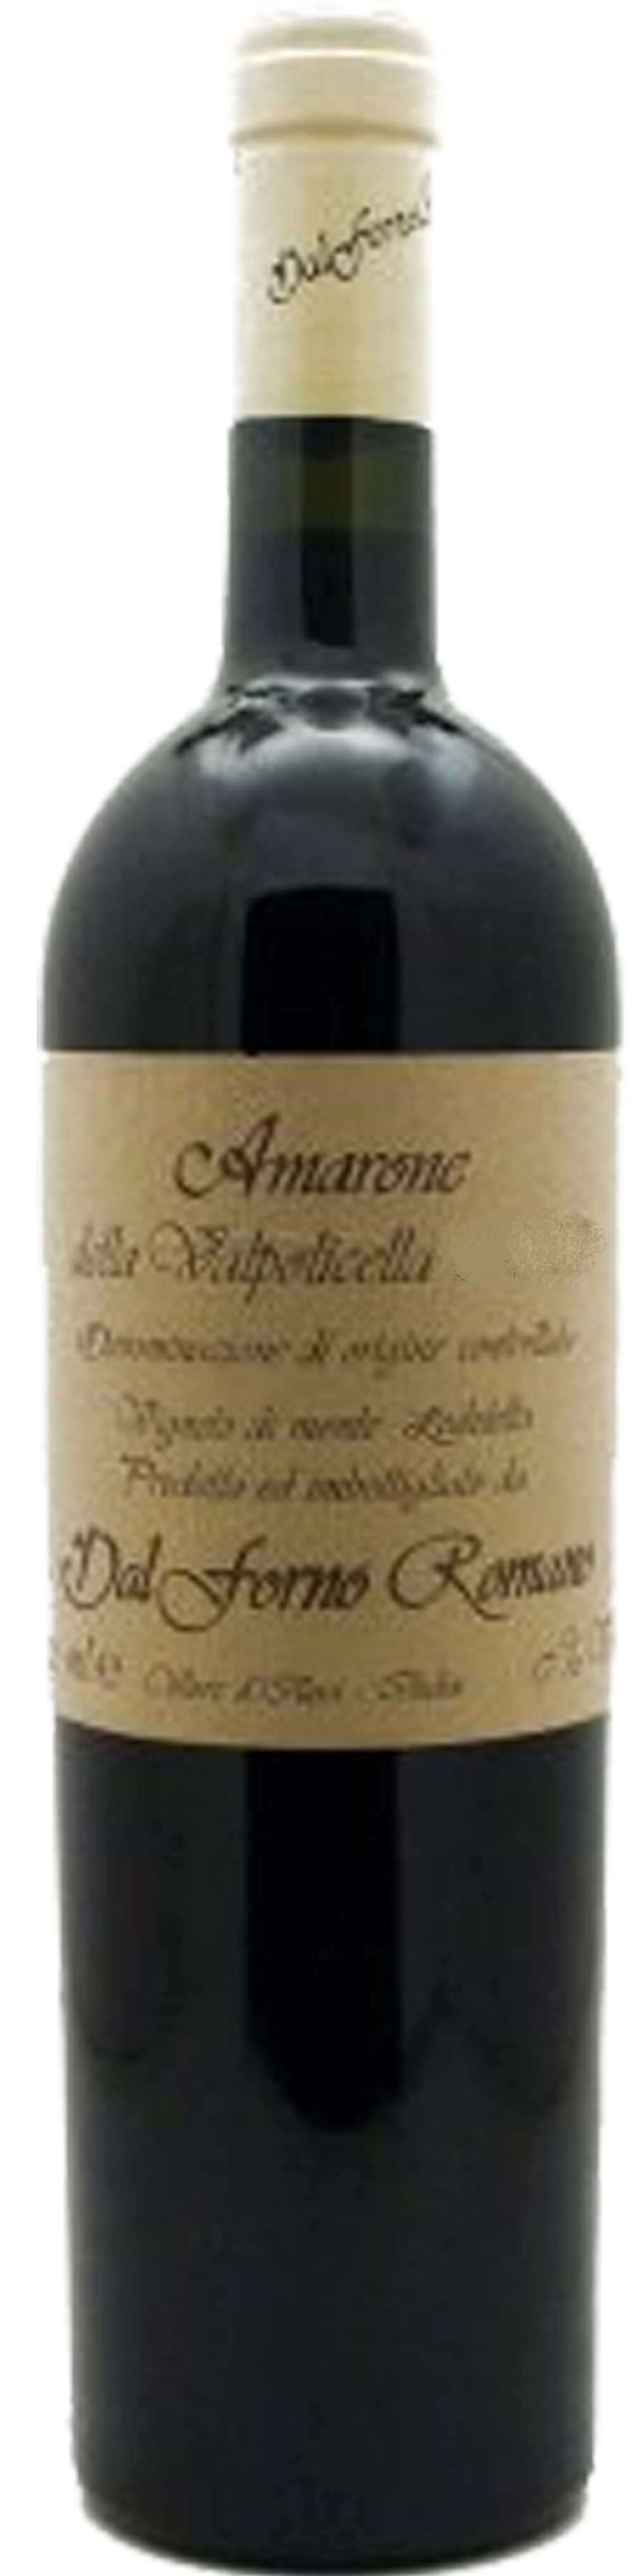 Bottle shot of 2008 Amarone Della Valpolicella